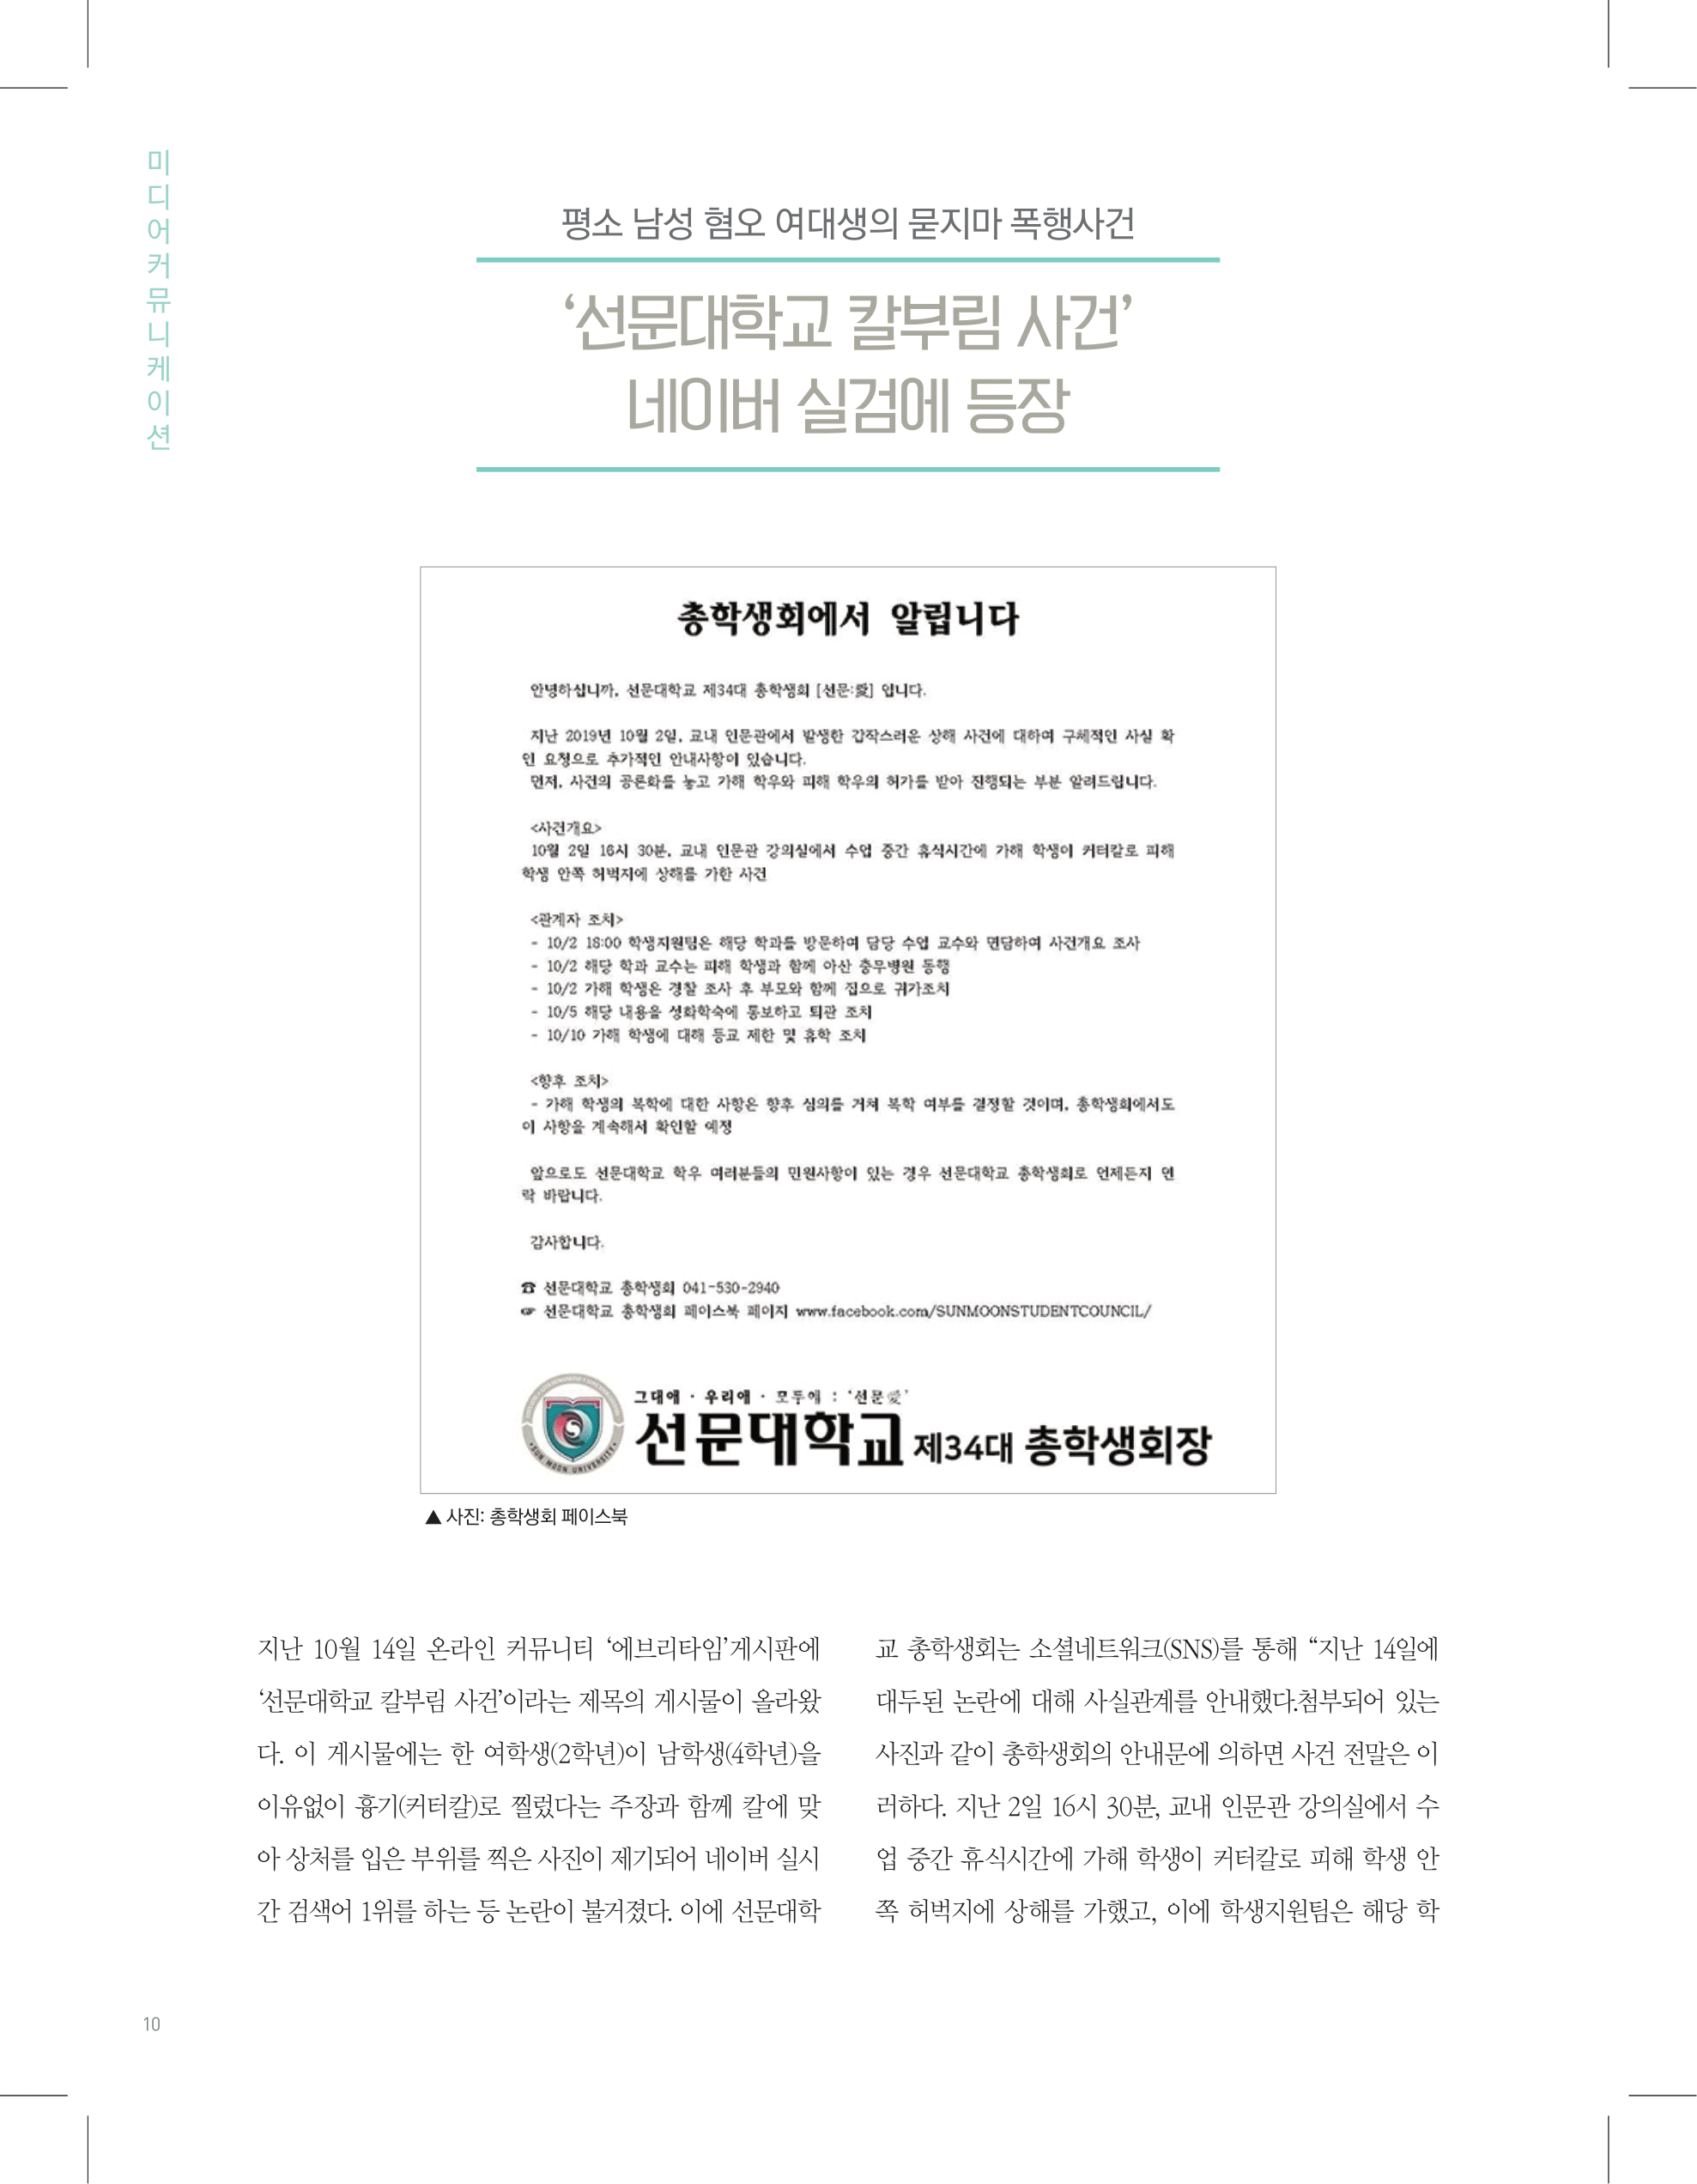 뜻새김 신문 74호 10